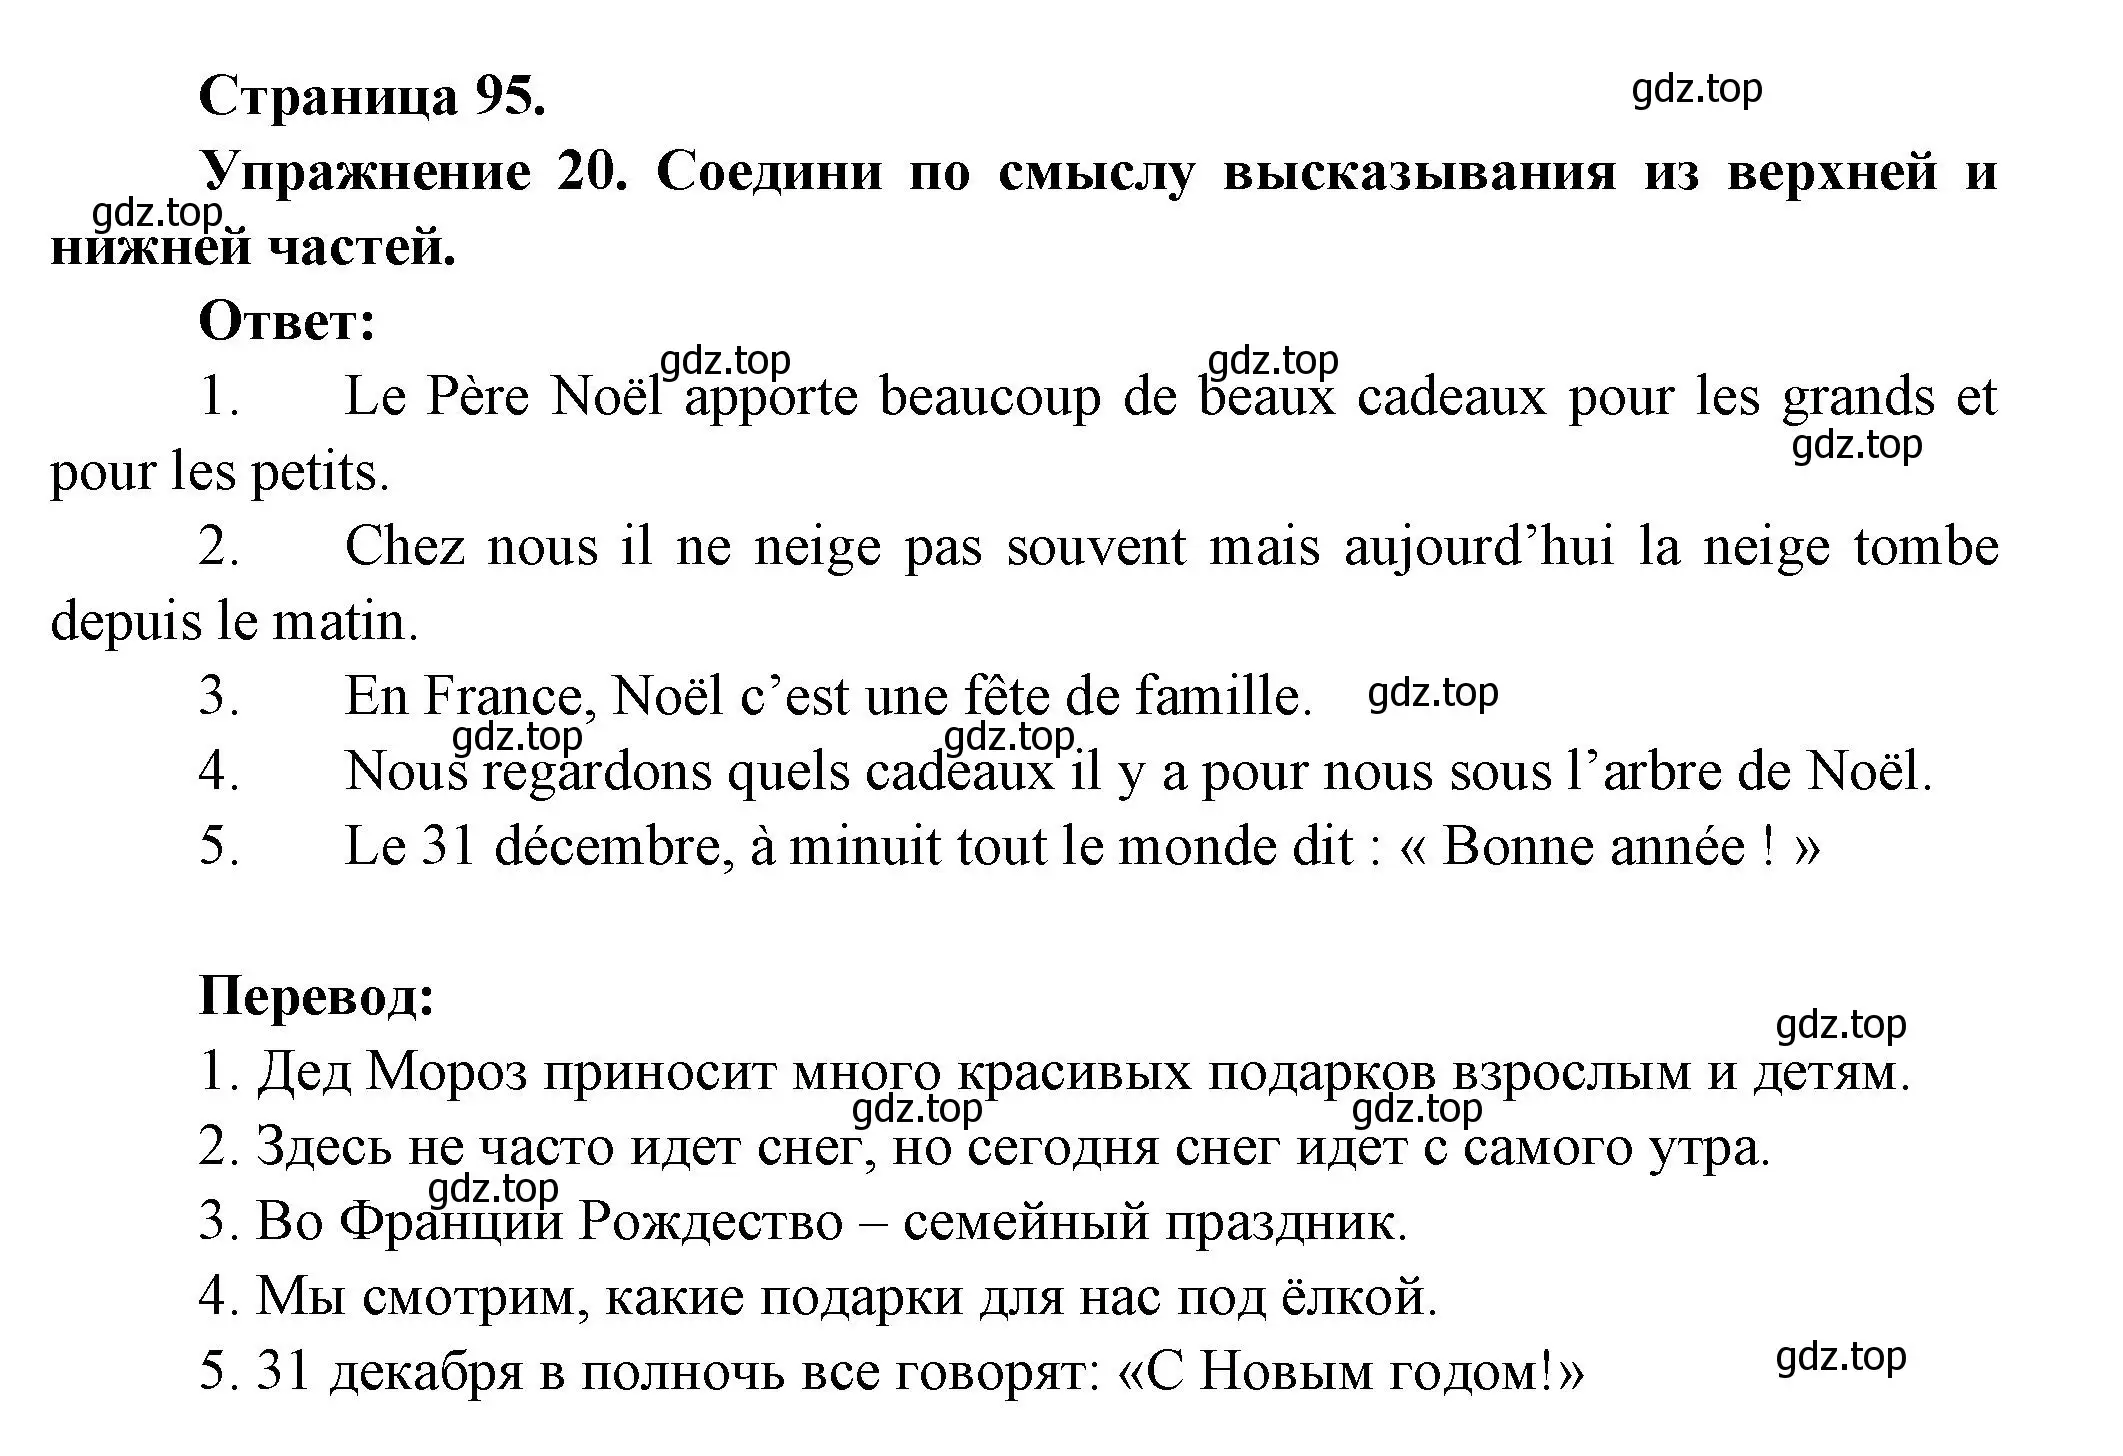 Решение номер 20 (страница 95) гдз по французскому языку 5 класс Береговская, Белосельская, учебник 1 часть